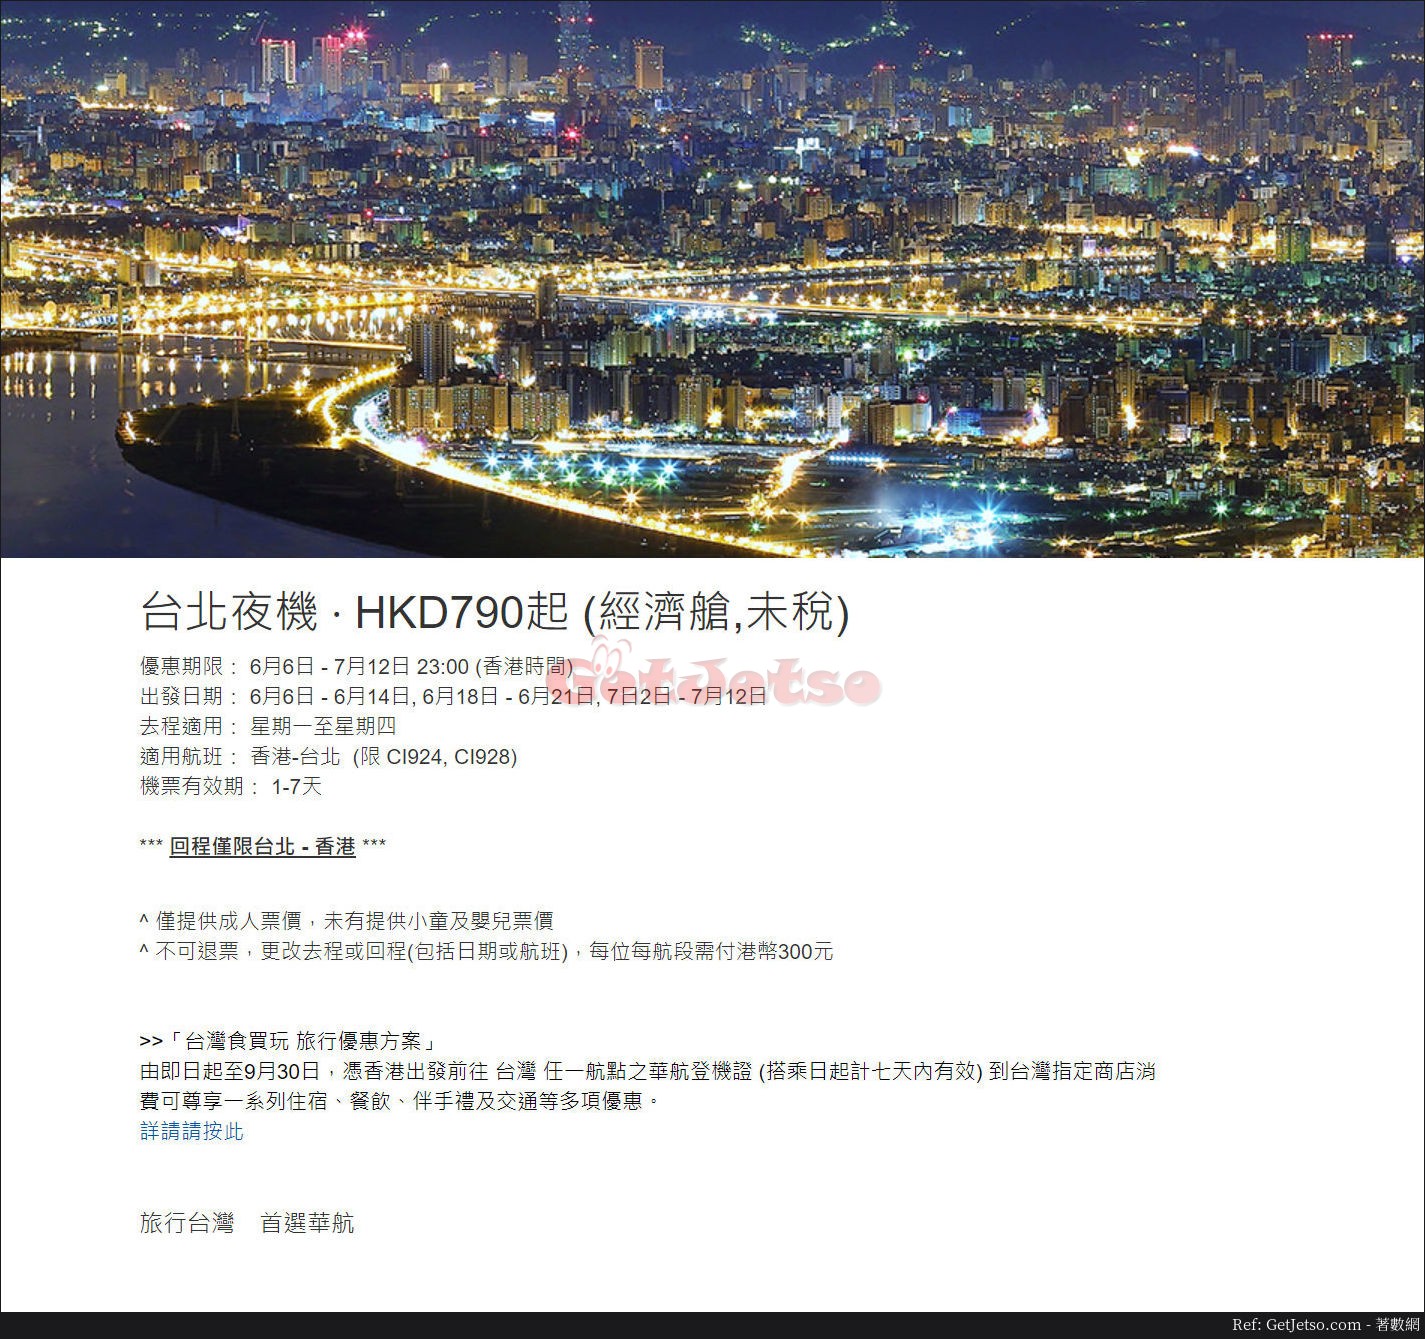 低至0飛台北夜機機票優惠@中華航空(至18年7月12日)圖片1